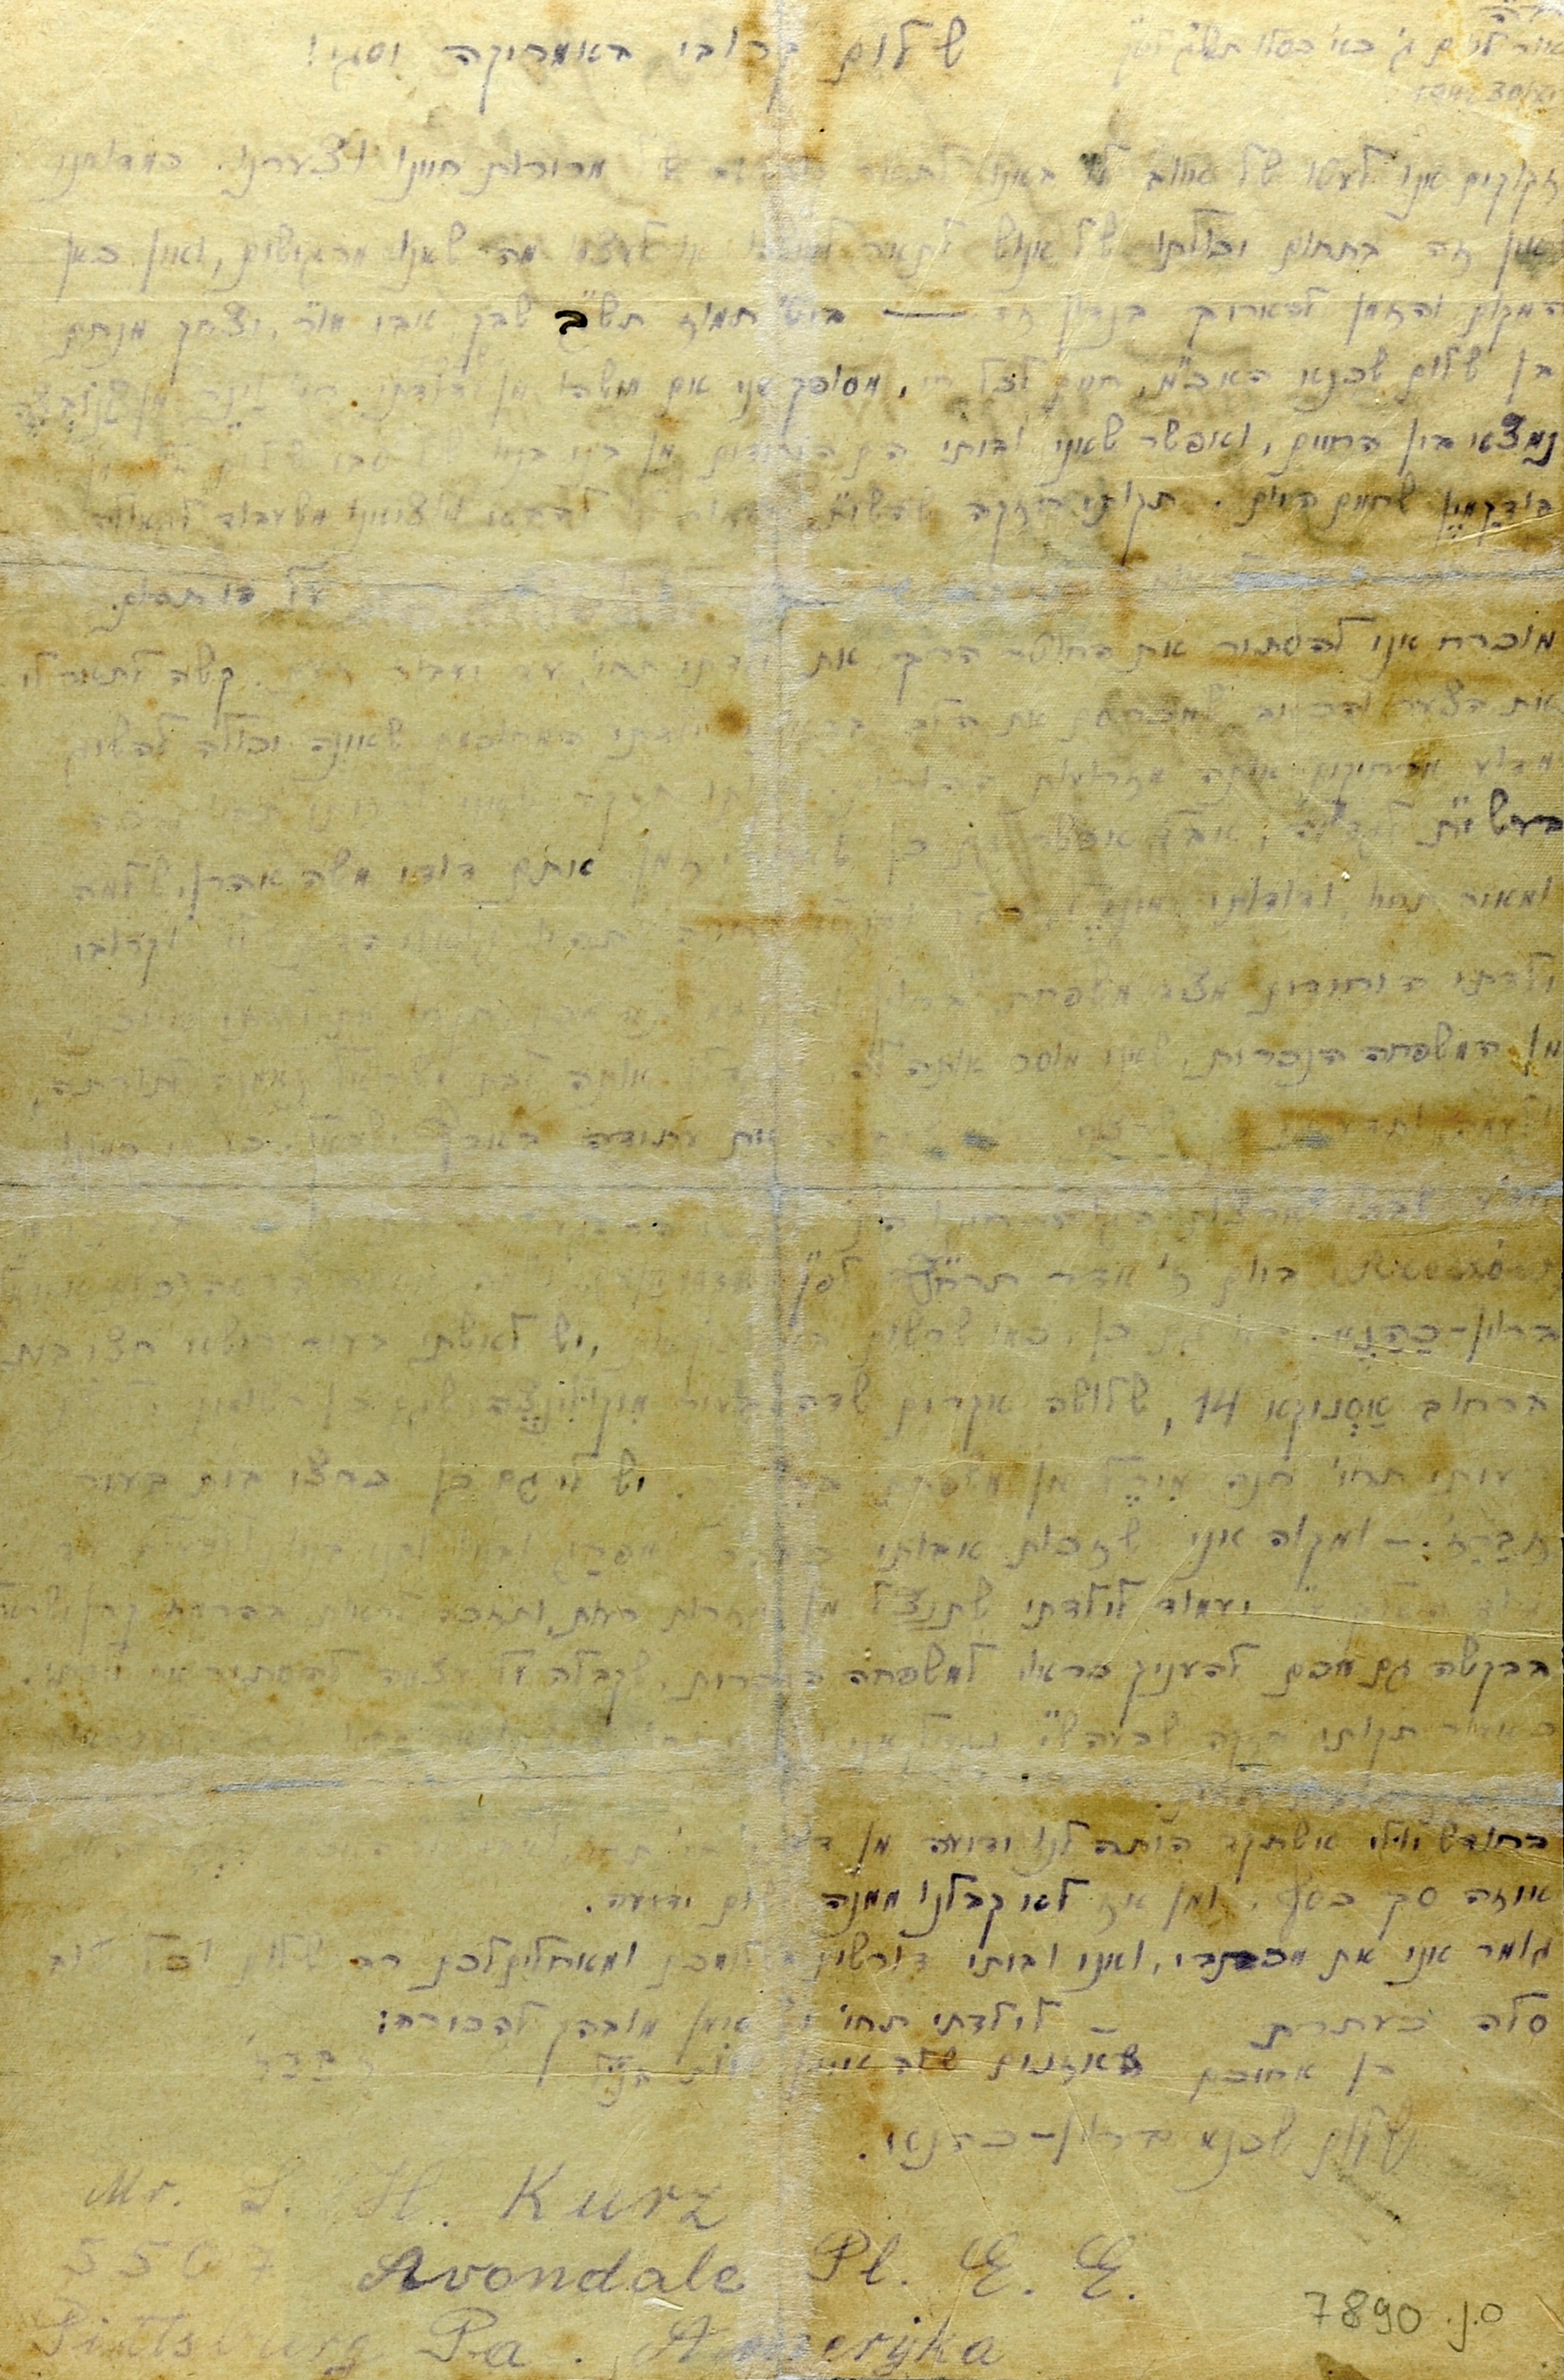 30 de noviembre 1942: Gueto de Zbaraż. Cartas póstumas del Holocausto